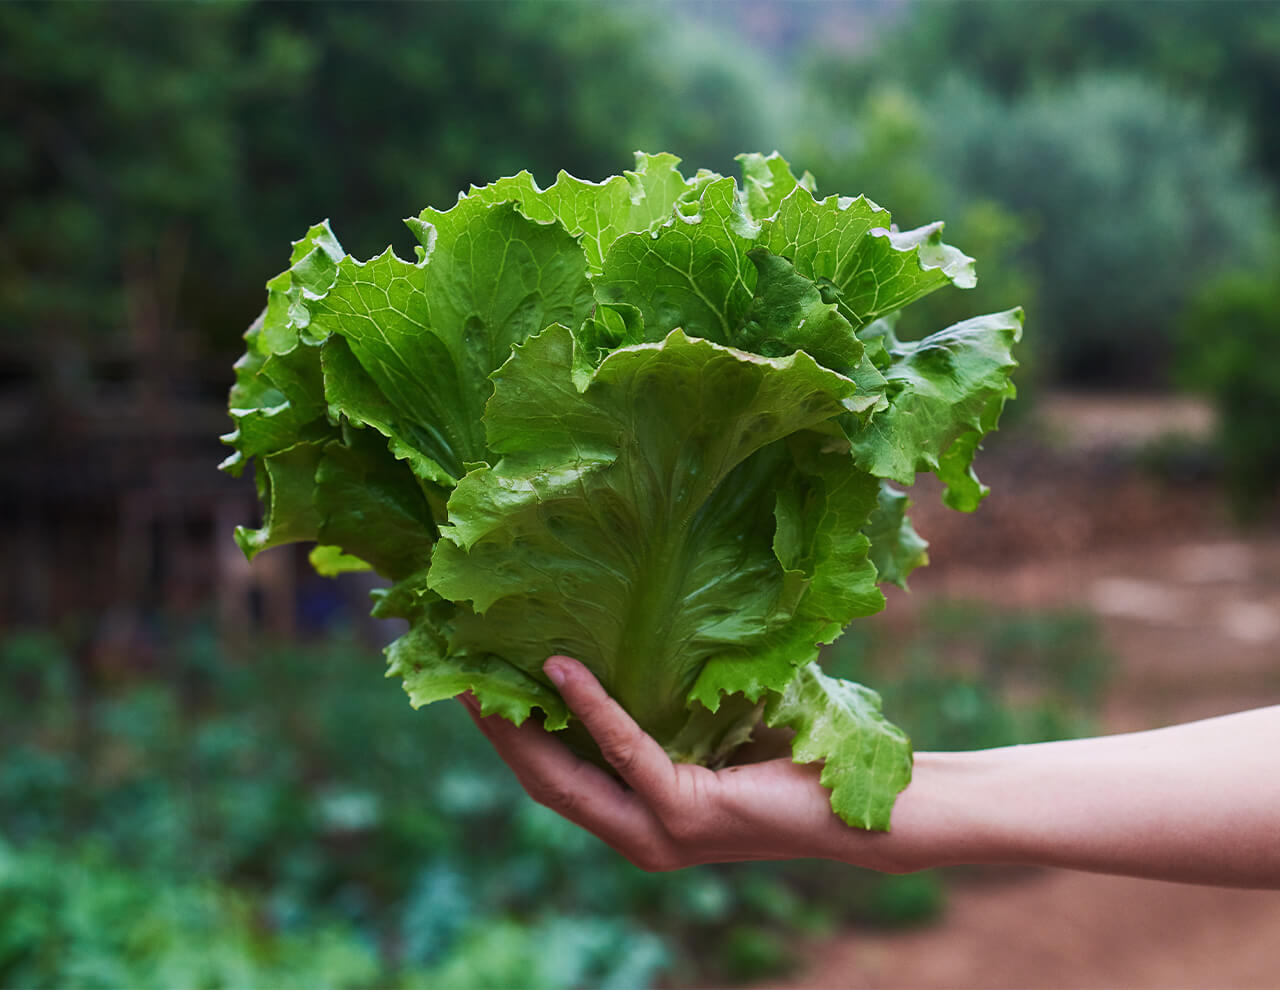 Gas brugt til fødevarer, rent naturligt salathoved der holdes i hånd